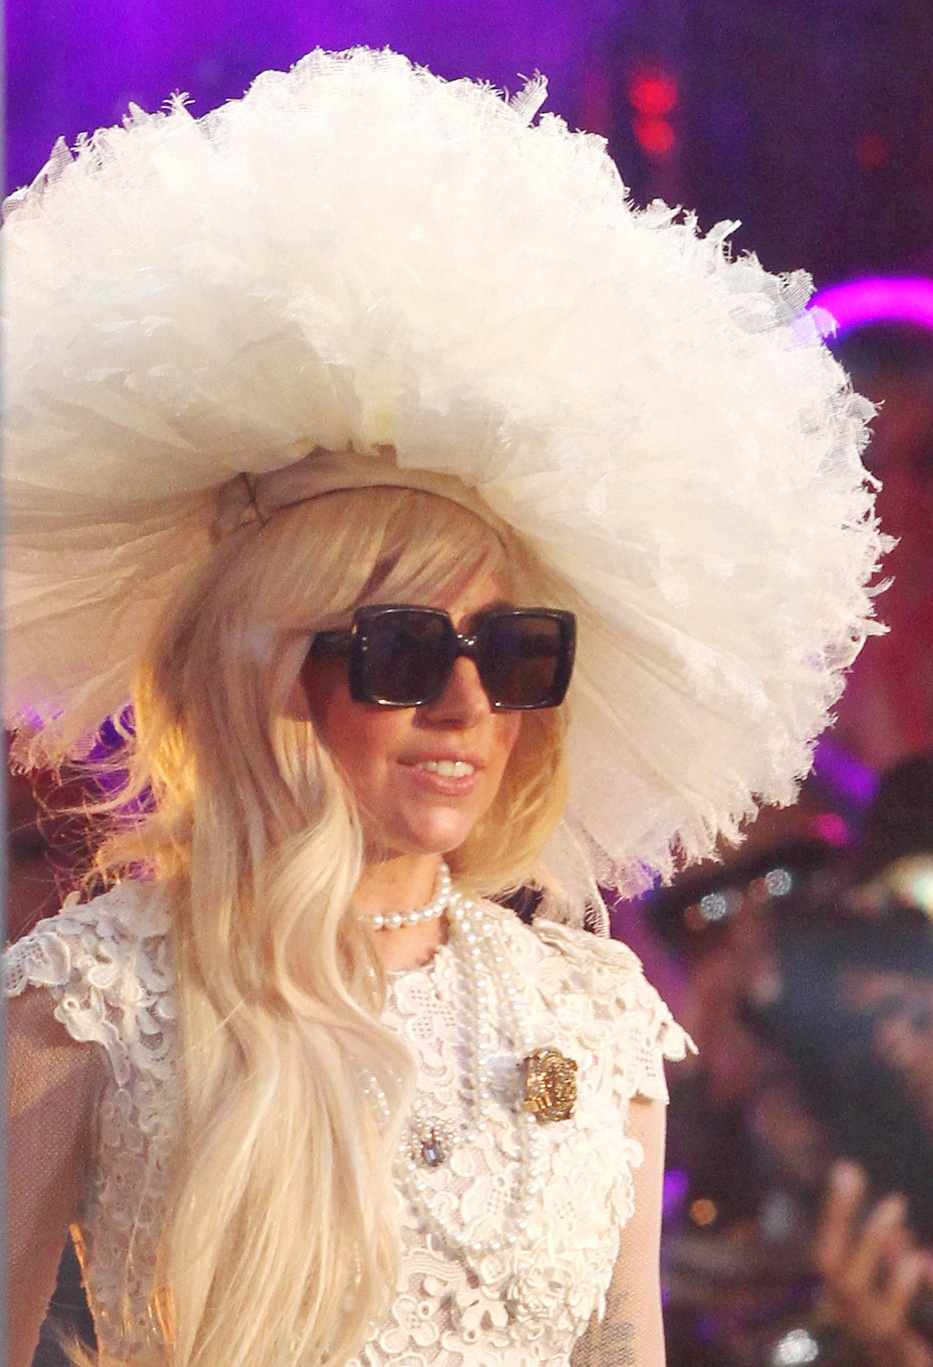 images of lady gaga without makeup. Lady Gaga: No Makeup